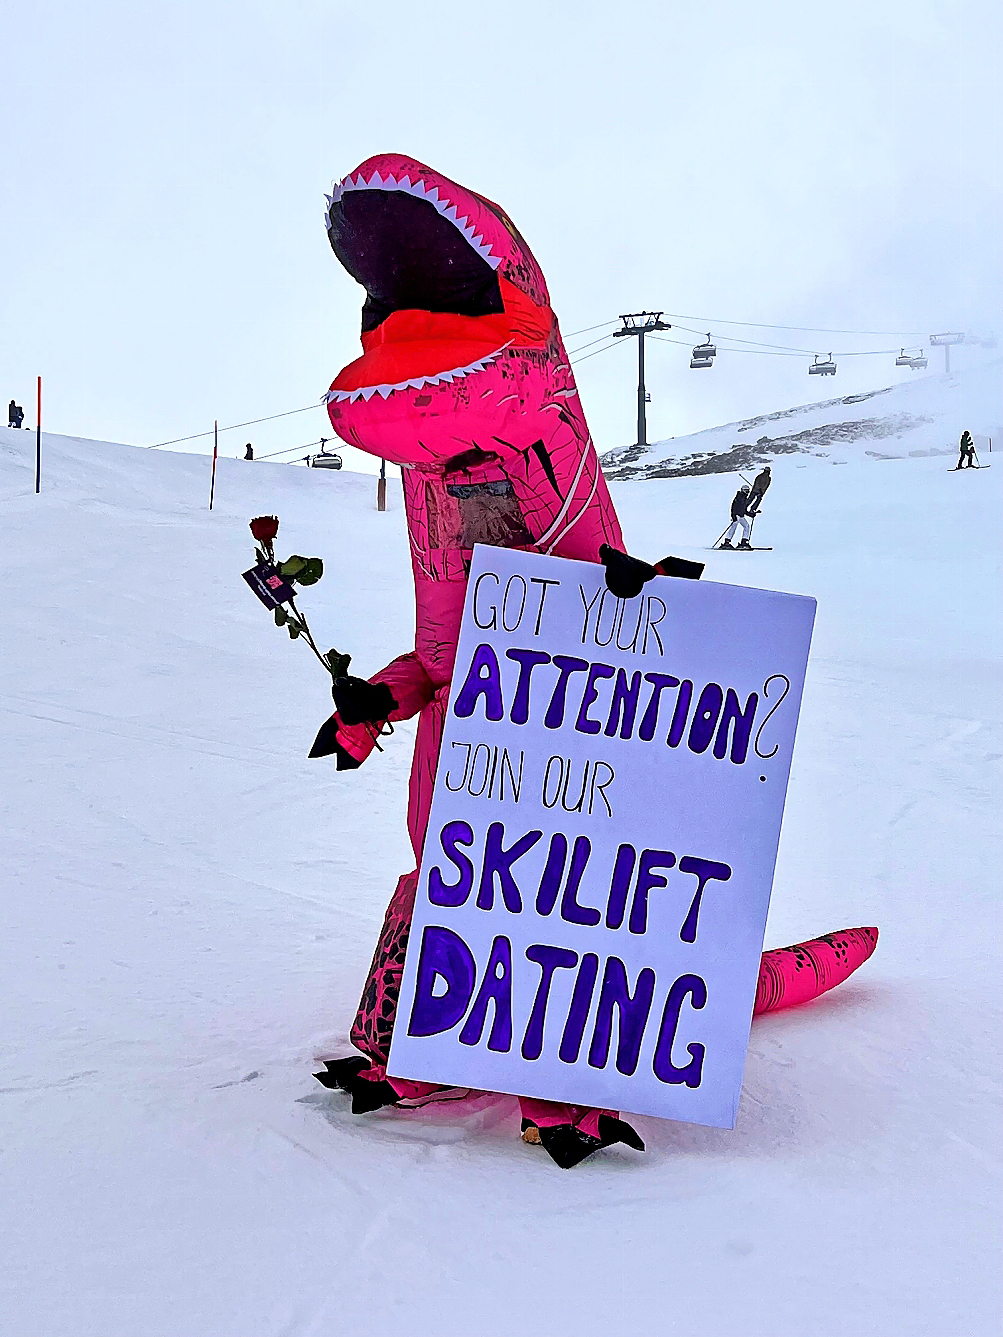 Wer will mitmachen? Die Werbung für das Skilift-Dating ist in vollem Gange.